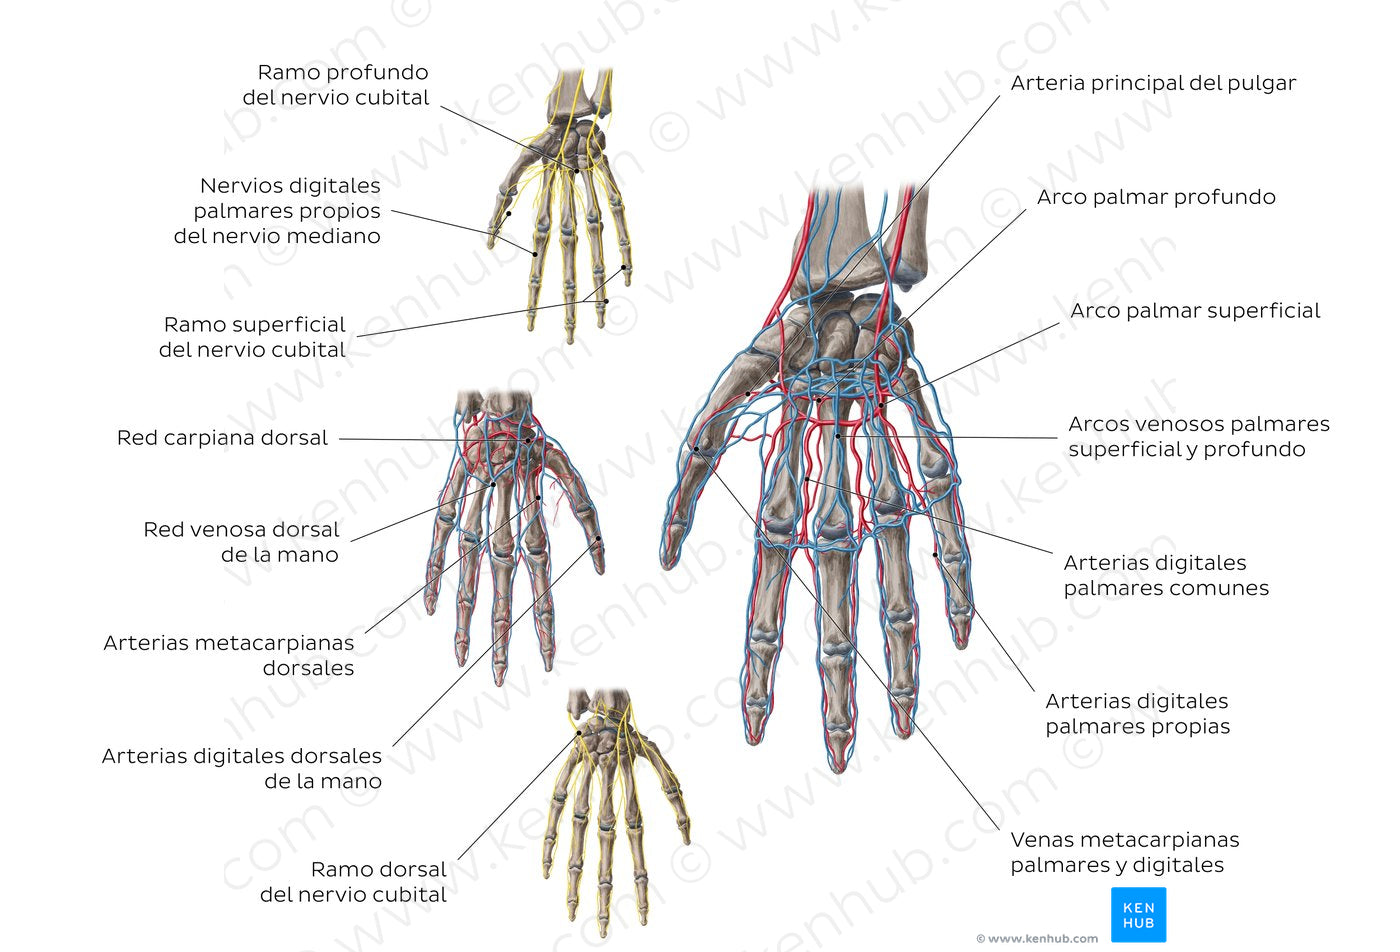 Neurovasculature of the hand (Spanish)